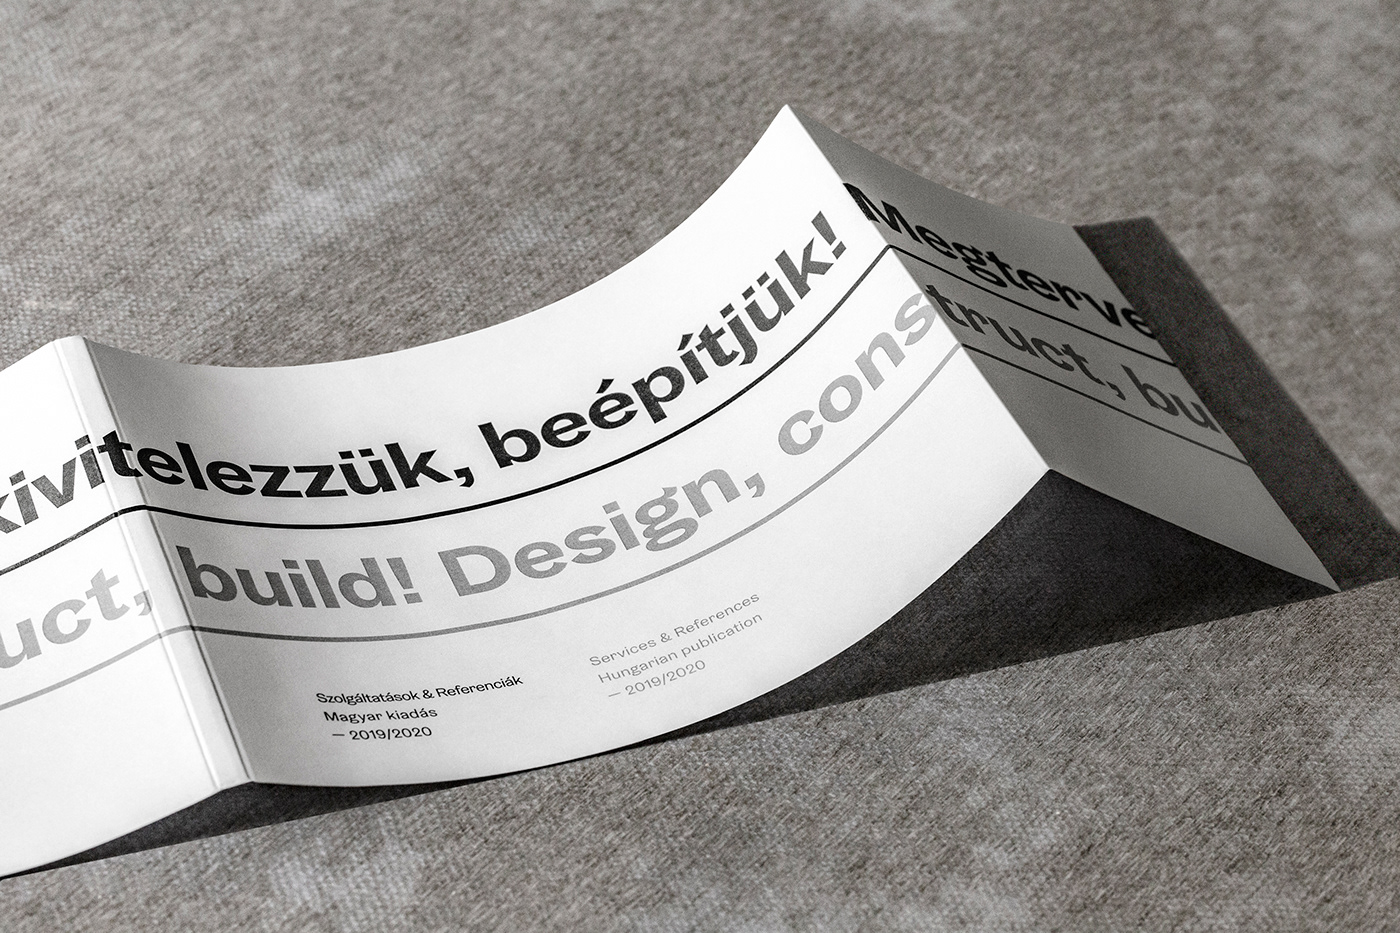 Business card design idea #468: Faalu